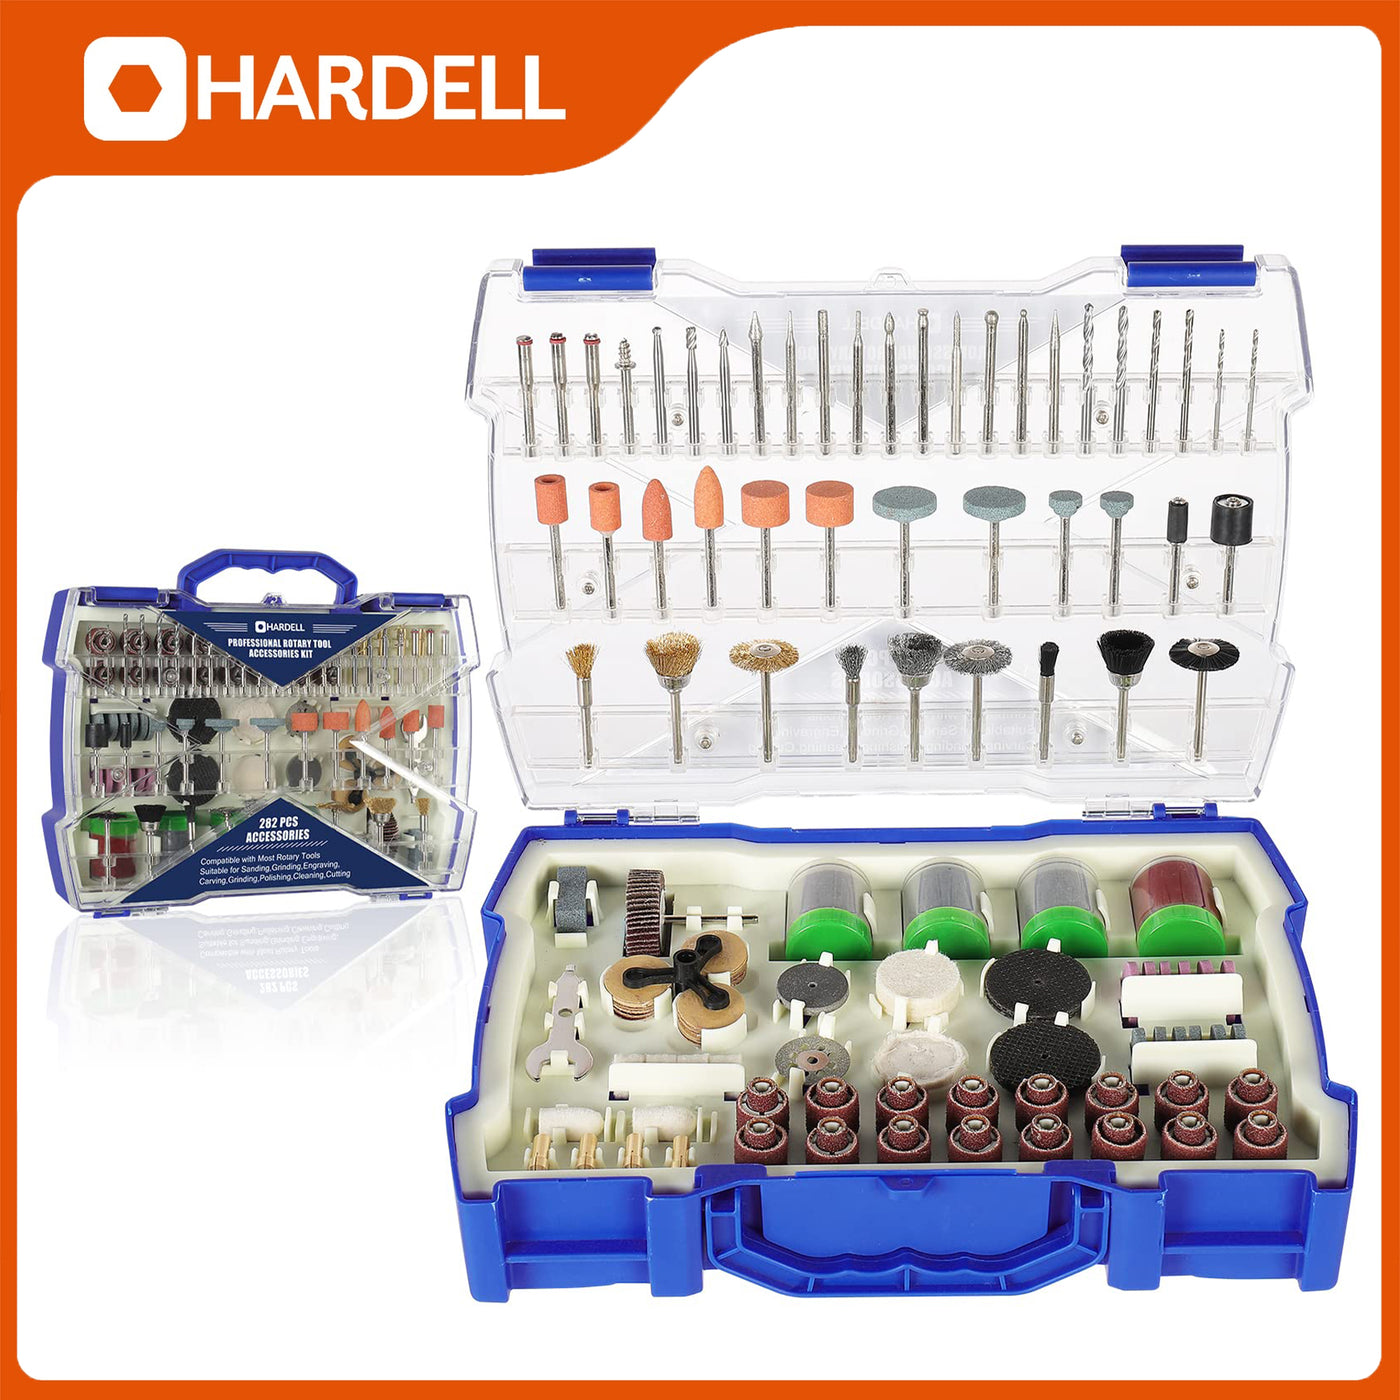 HDTB9020 282 Pcs Power Rotary Tool Bits - Hardell